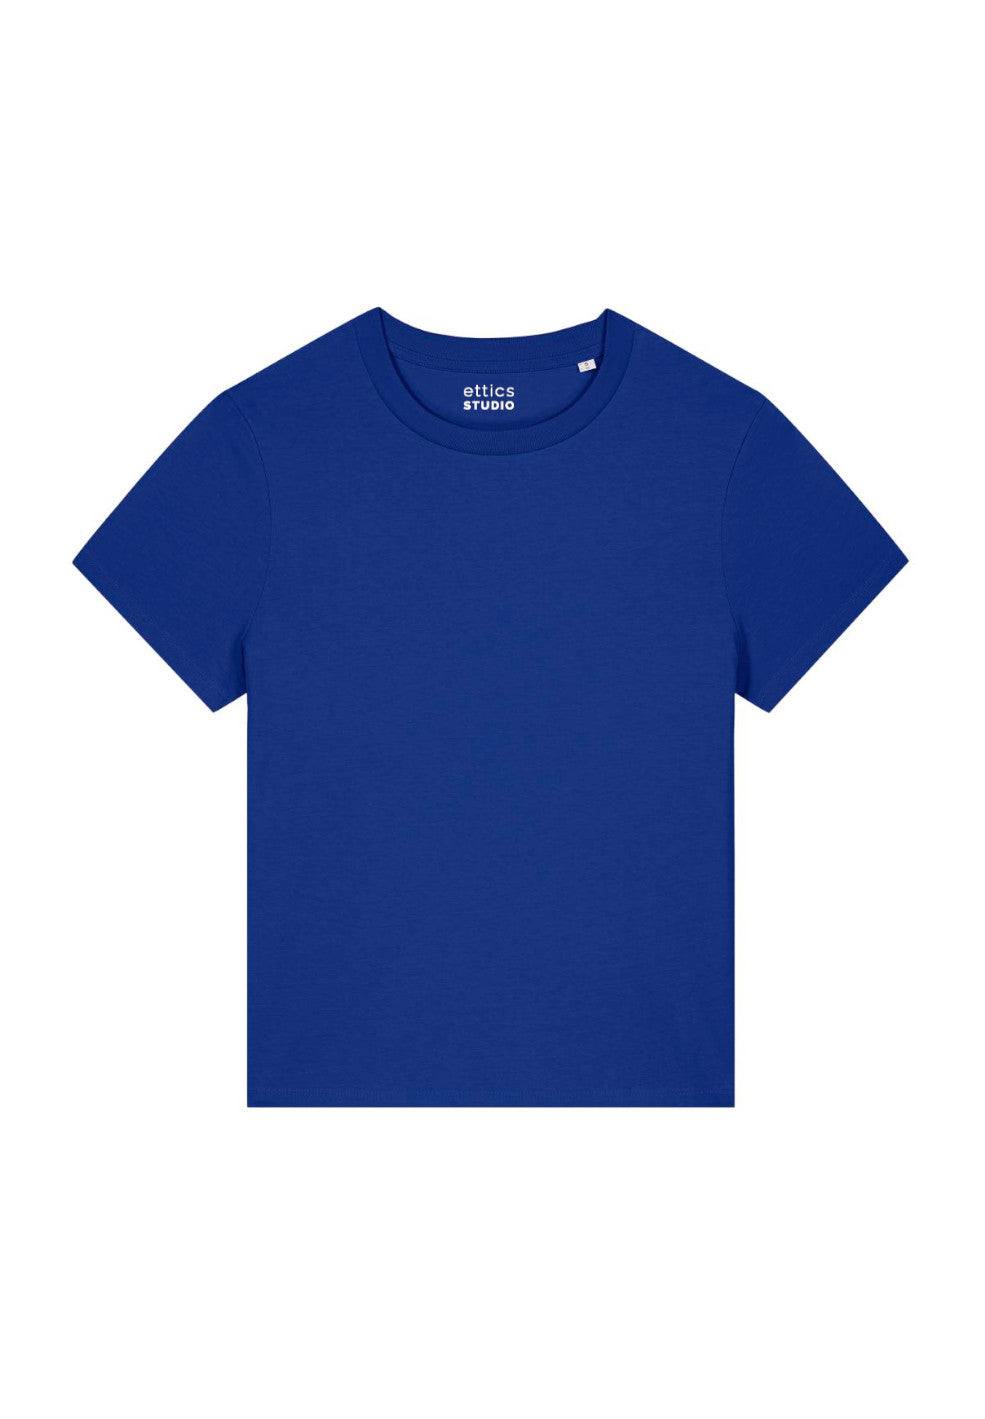 t-shirt muser worker blue